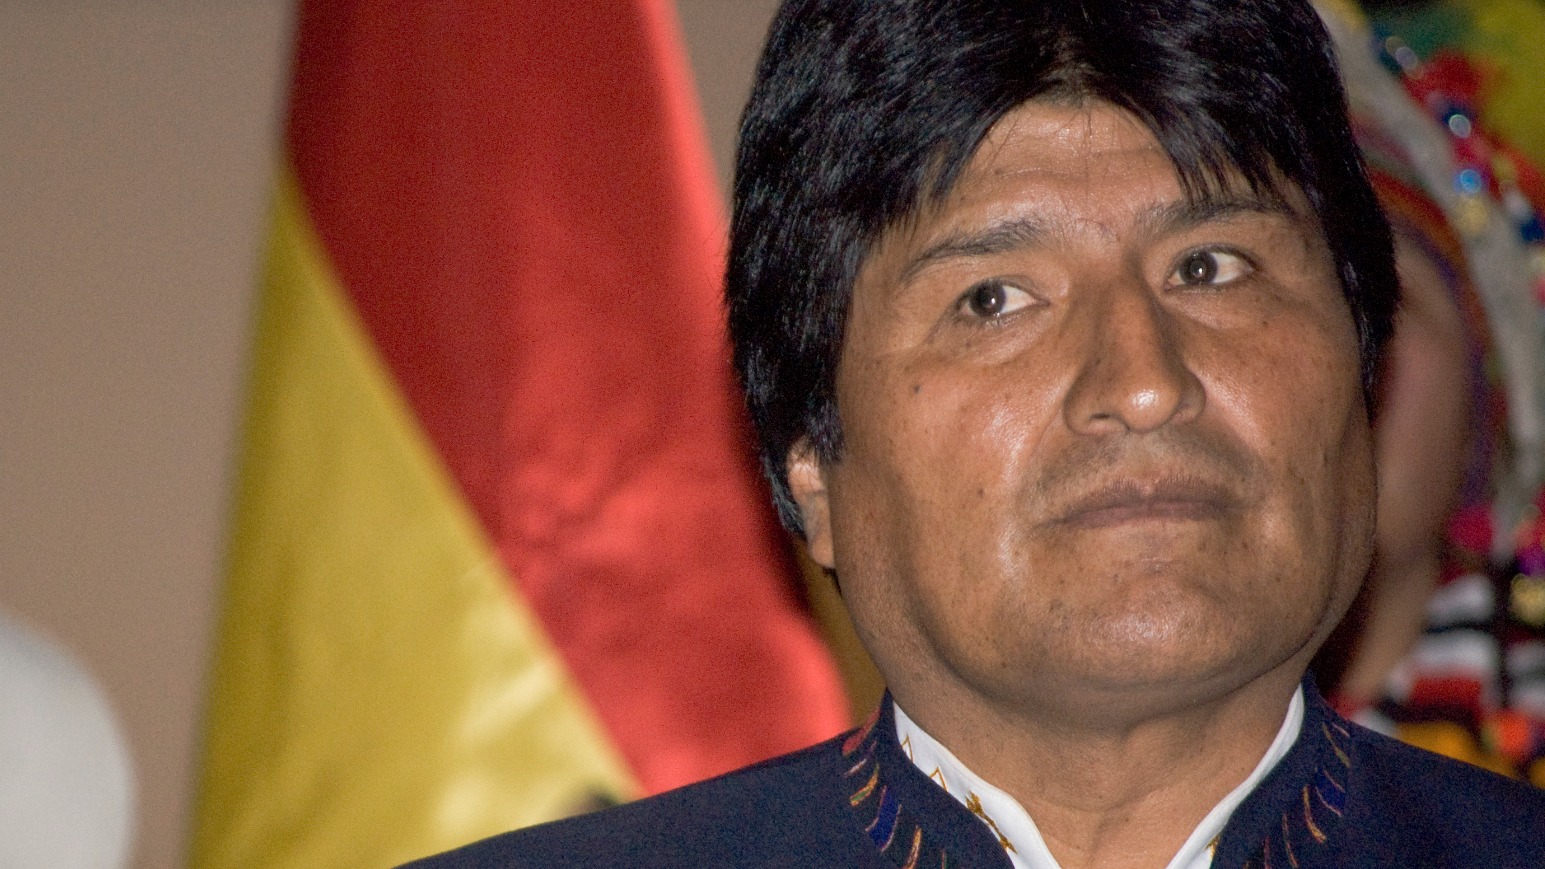 Le président bolivien Evo Morales met de l'espoir dans la médiation du pape François (Photo:Sébastien Baryli/Flickr/CC BY 2.0)